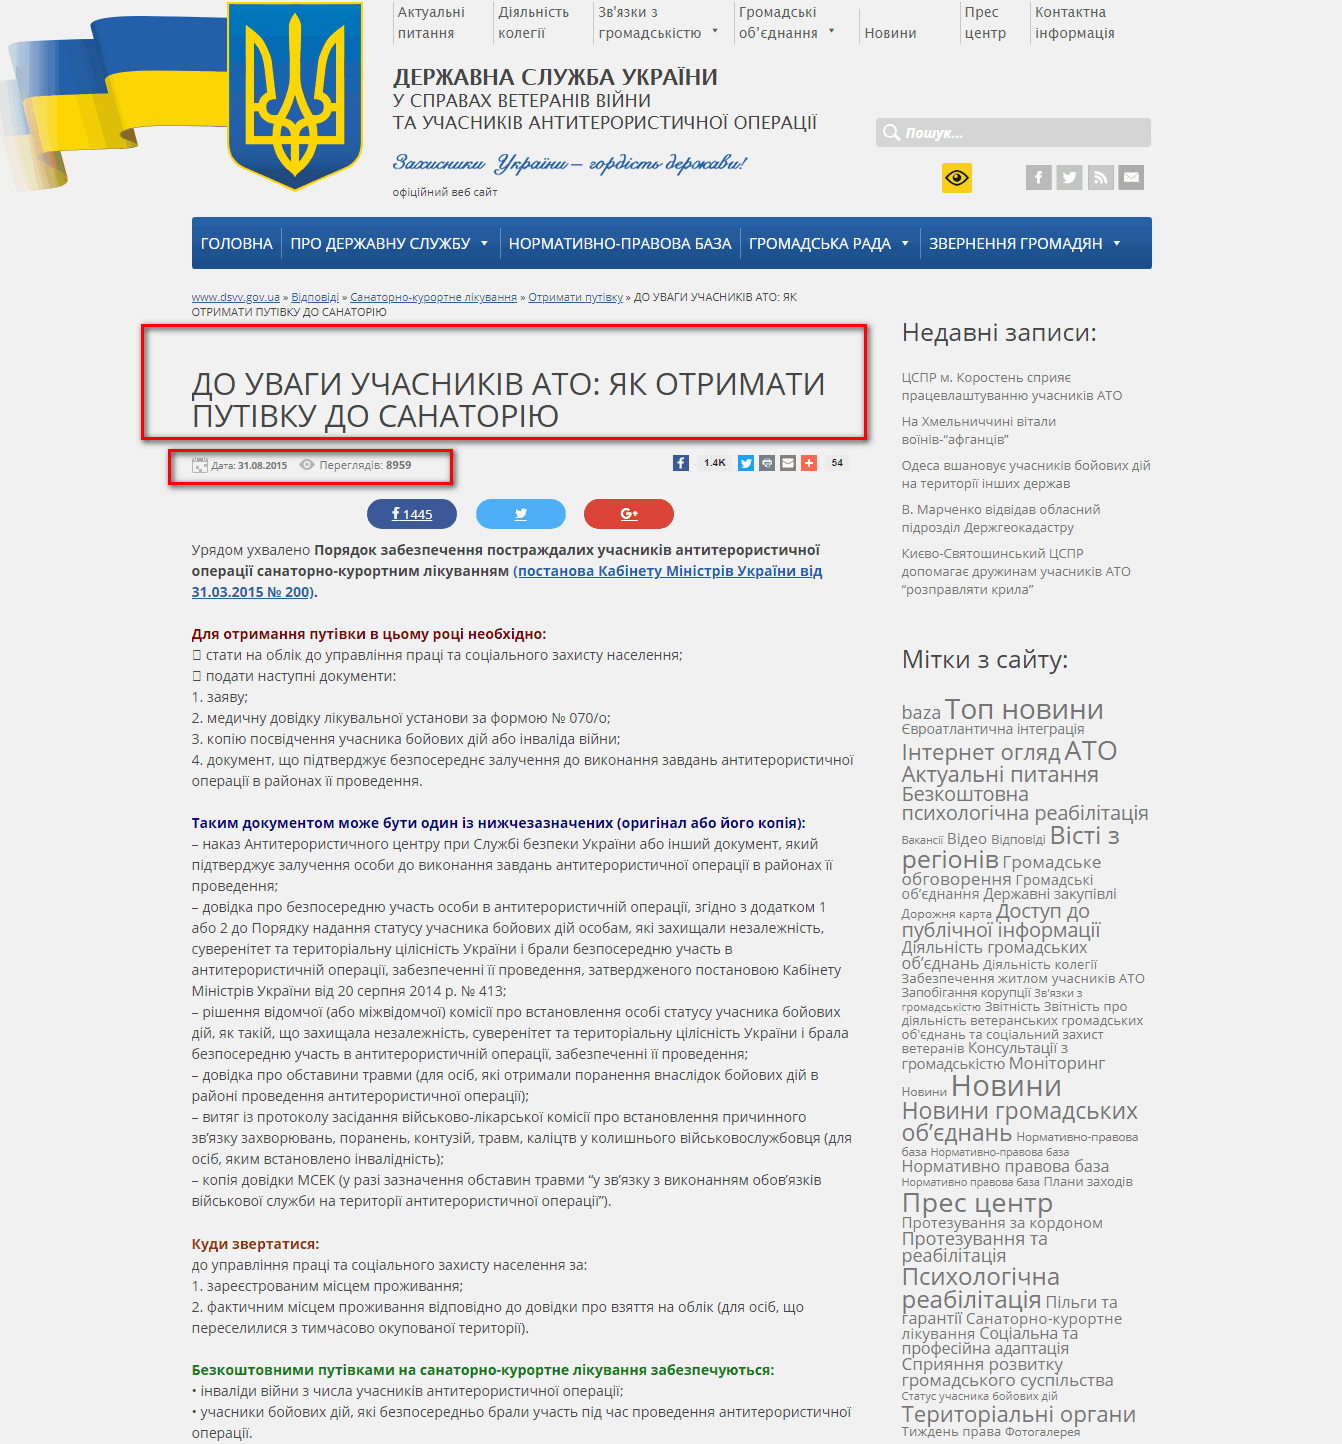 http://dsvv.gov.ua/vidpovidi/sanatorno-kurortne-likuvannya/otrymaty-putivku/do-uvahy-uchasnykiv-antyterorystychnoji-operatsiji-2.html